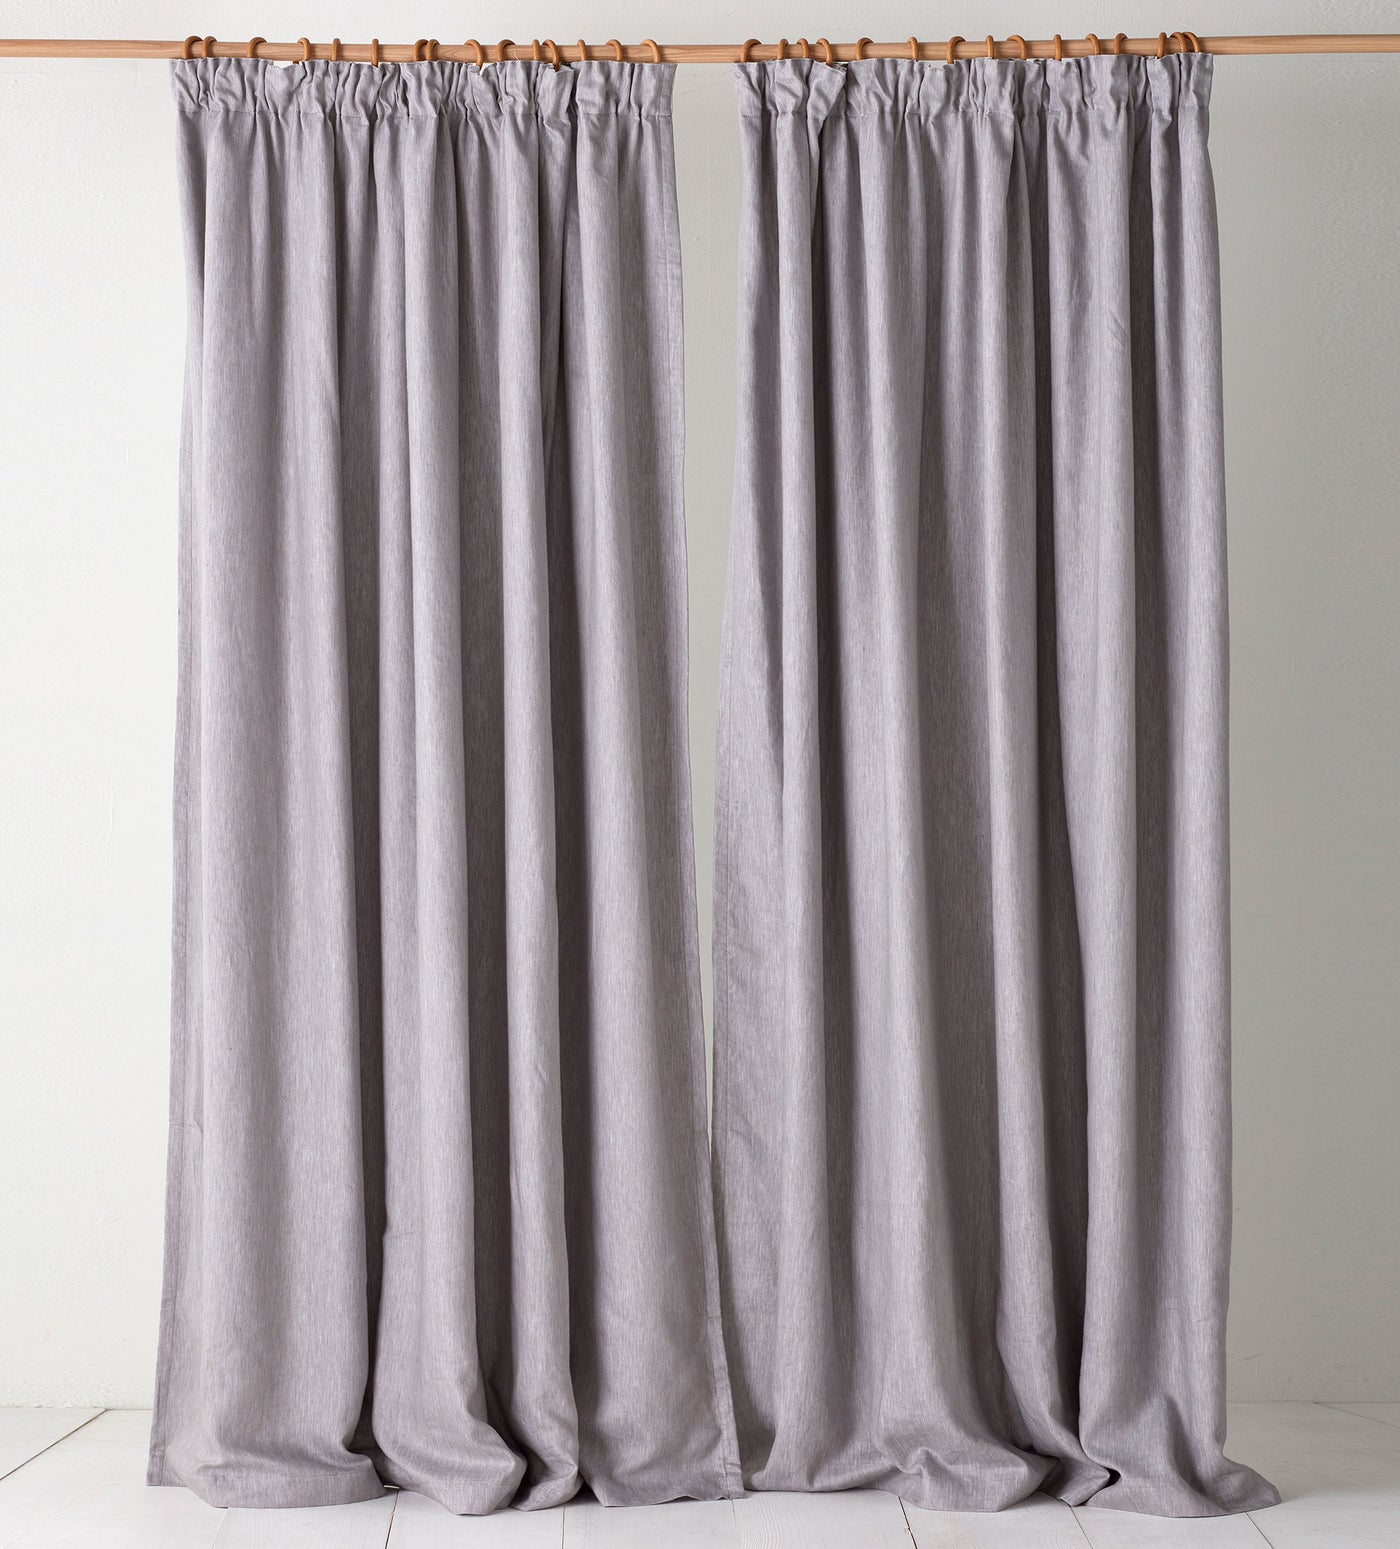 Flint Grey Twill Cotton Linen Blackout Pencil Pleat Curtains (Pair)